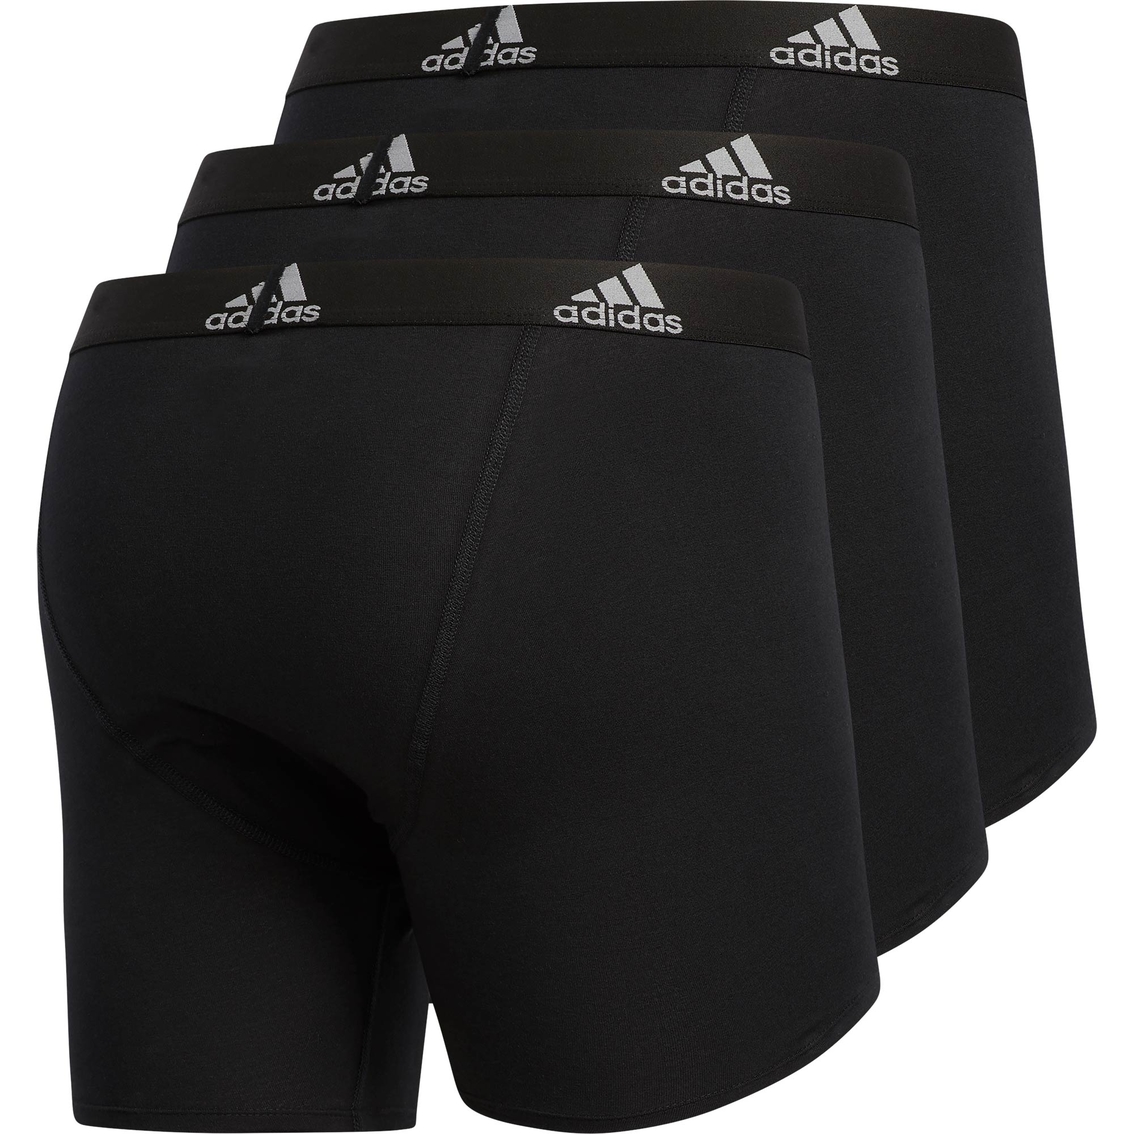 Adidas Men's Stretch Cotton Boxer Briefs 3 Pk | Underwear | Clothing ...